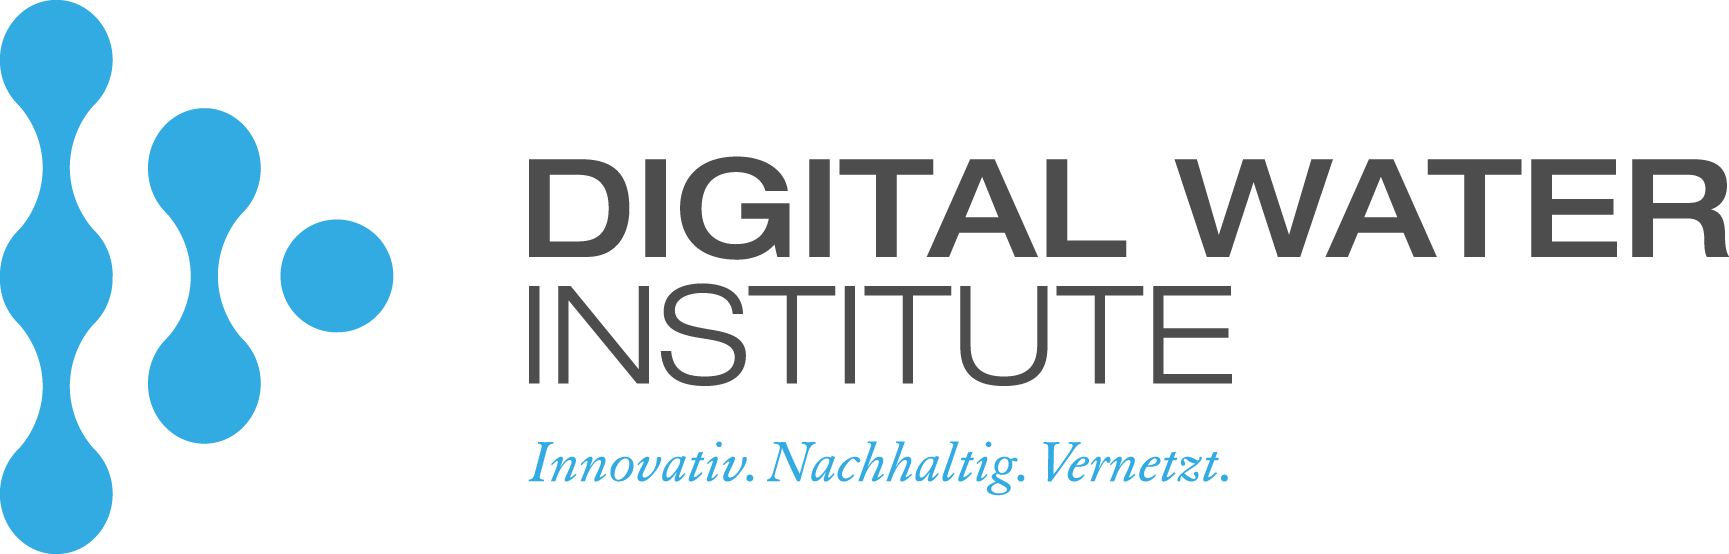 Digital Water Institute e. V.